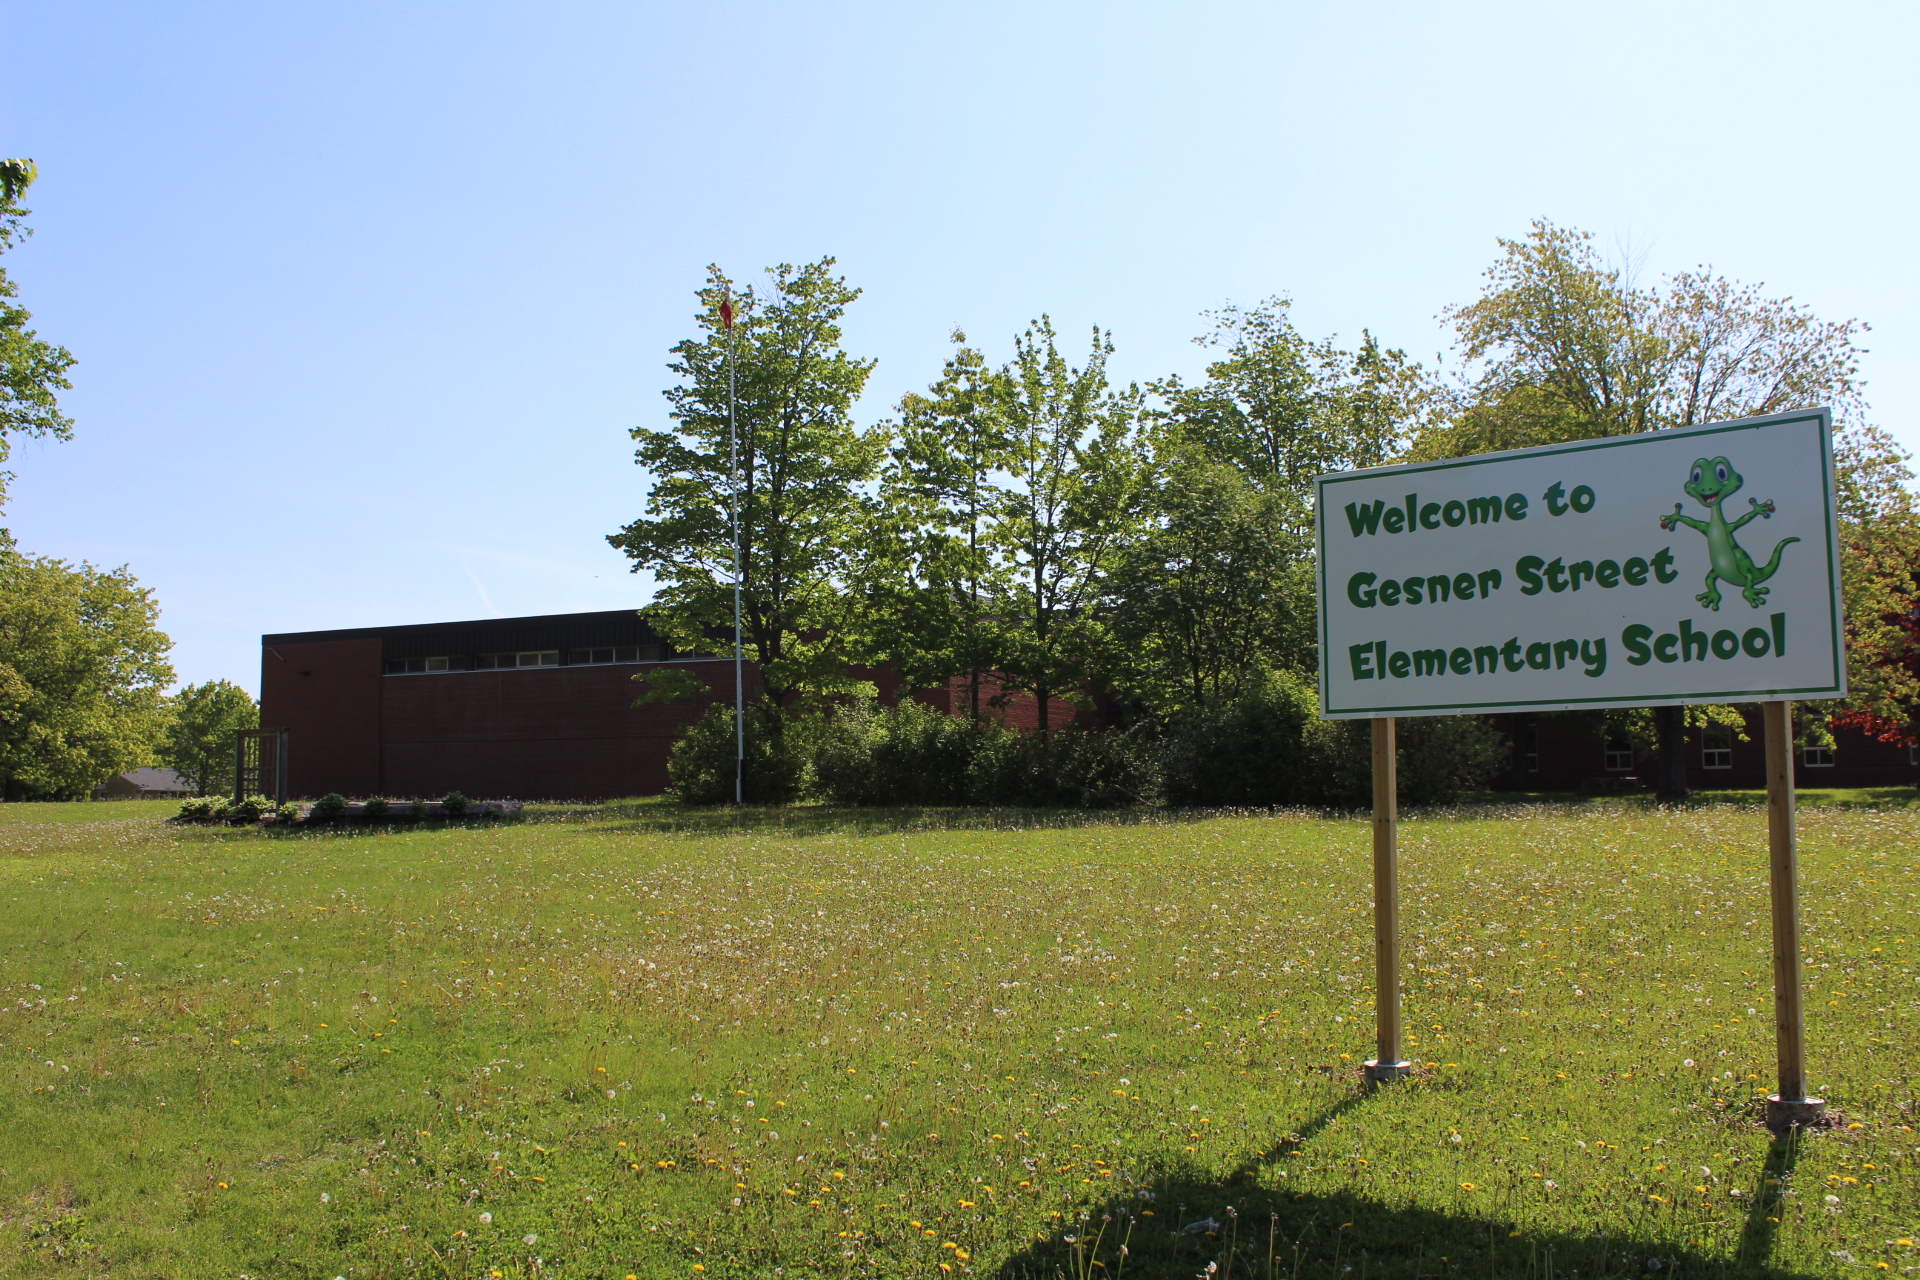 Gesner Street Elementary School. Oromocto, NB.